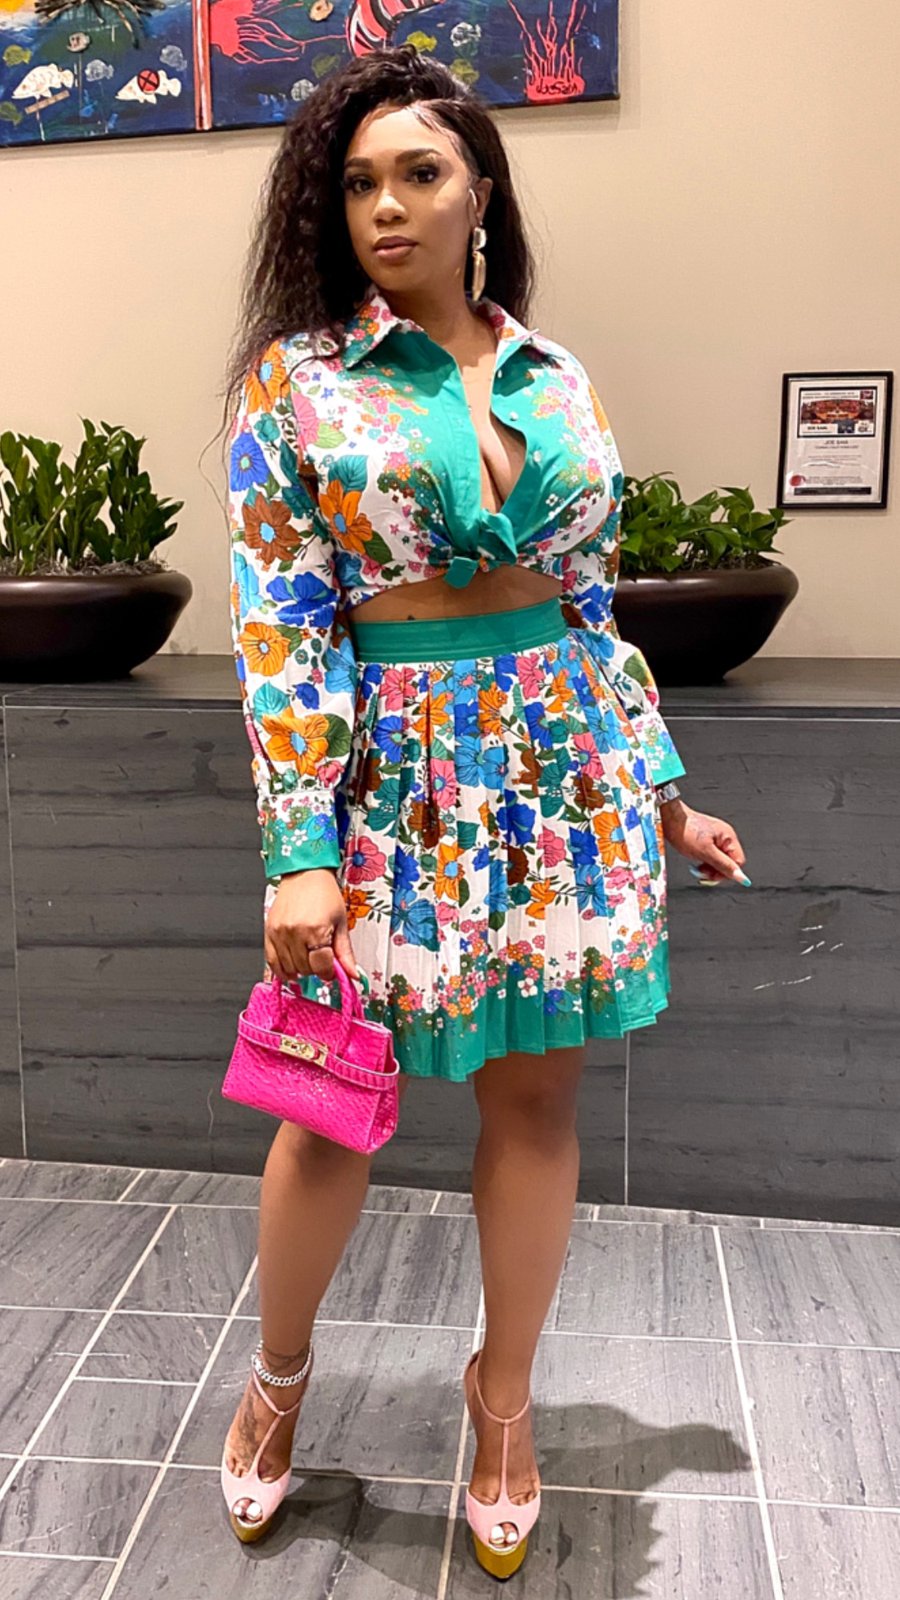 Sami Multicolour Skirt set